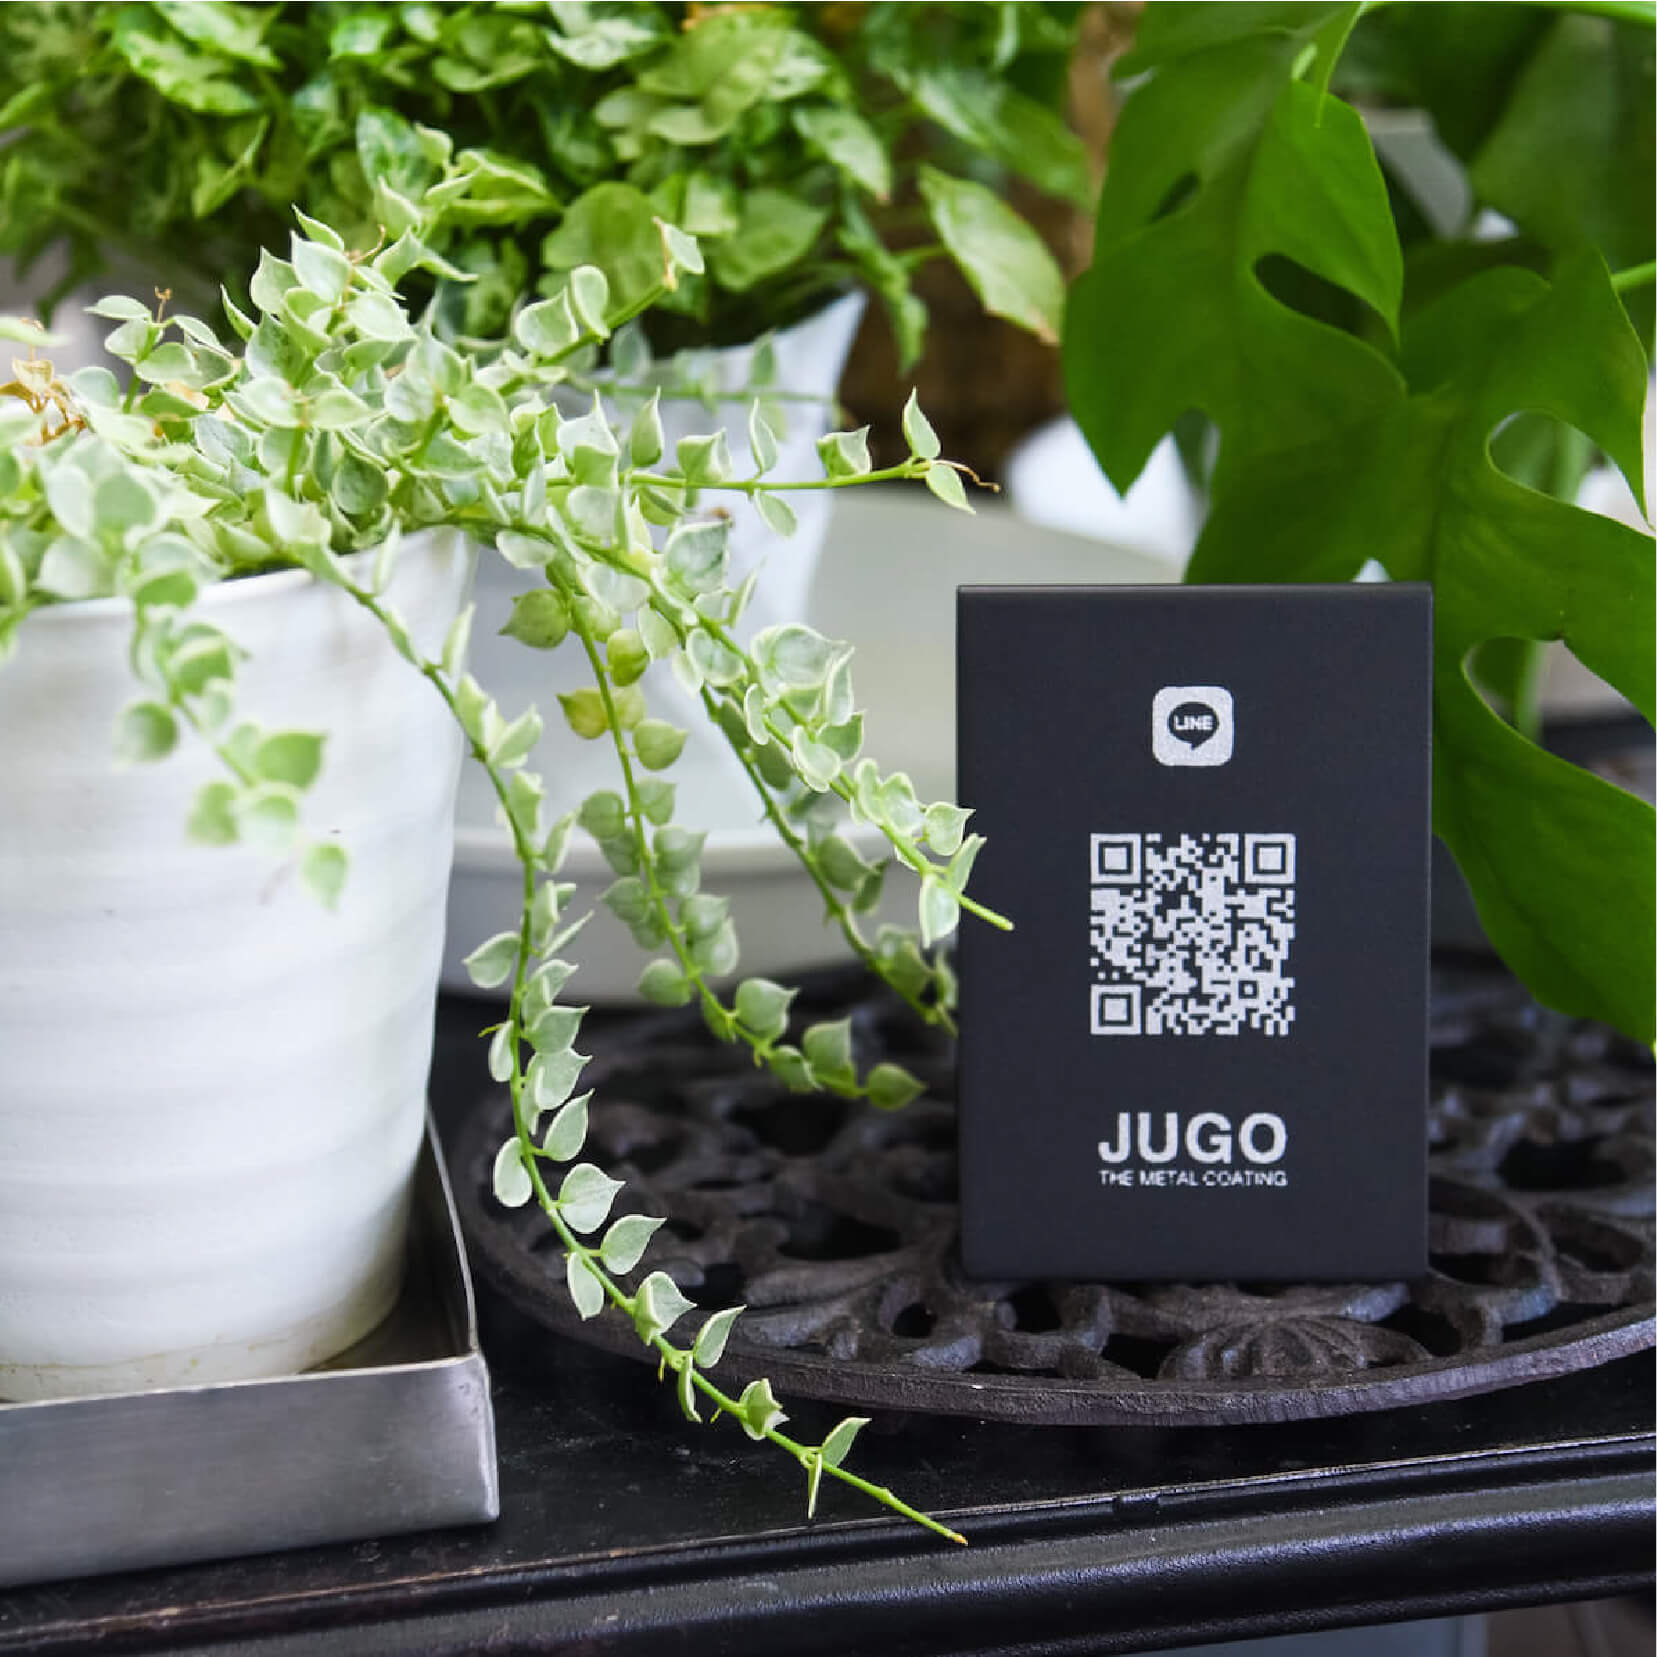 JUGO STAND_ずっと使える。<br />
高耐久・リメイクもできる、持続可能なアイテム。<br />
Satin Black × White